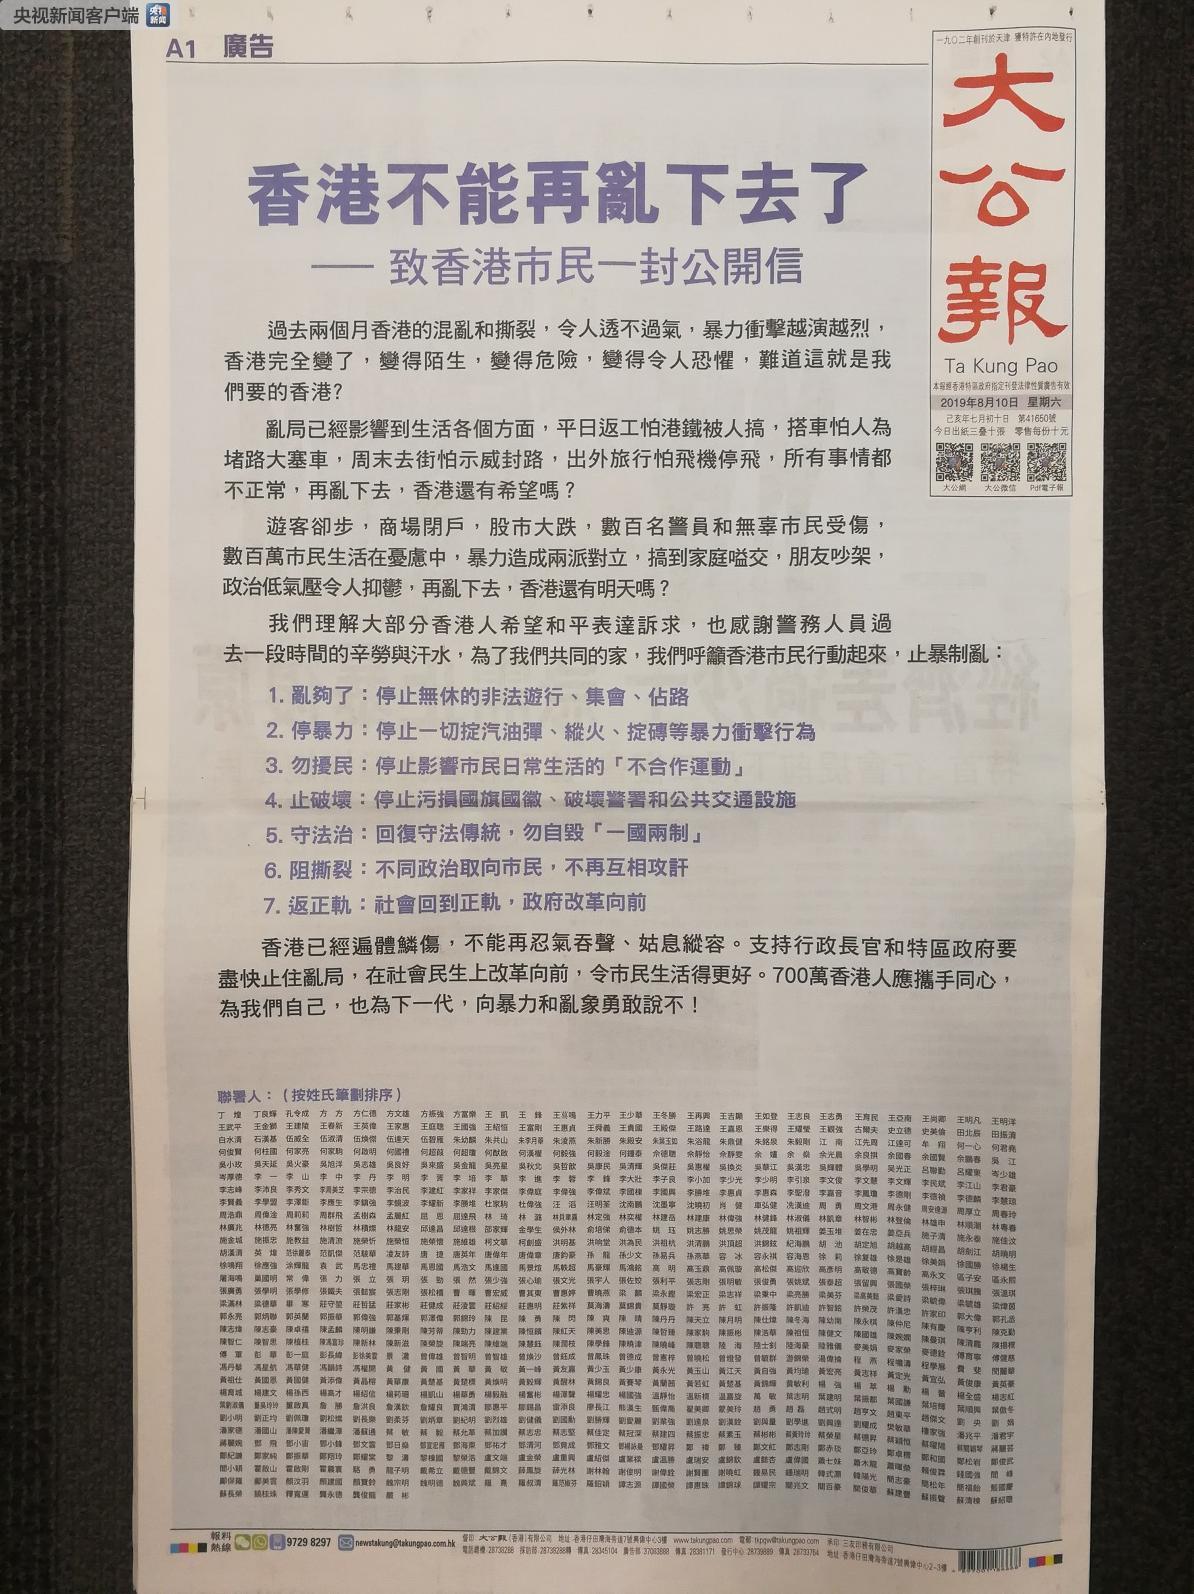 △ 大公报头版刊登《香港不能再乱下去了》